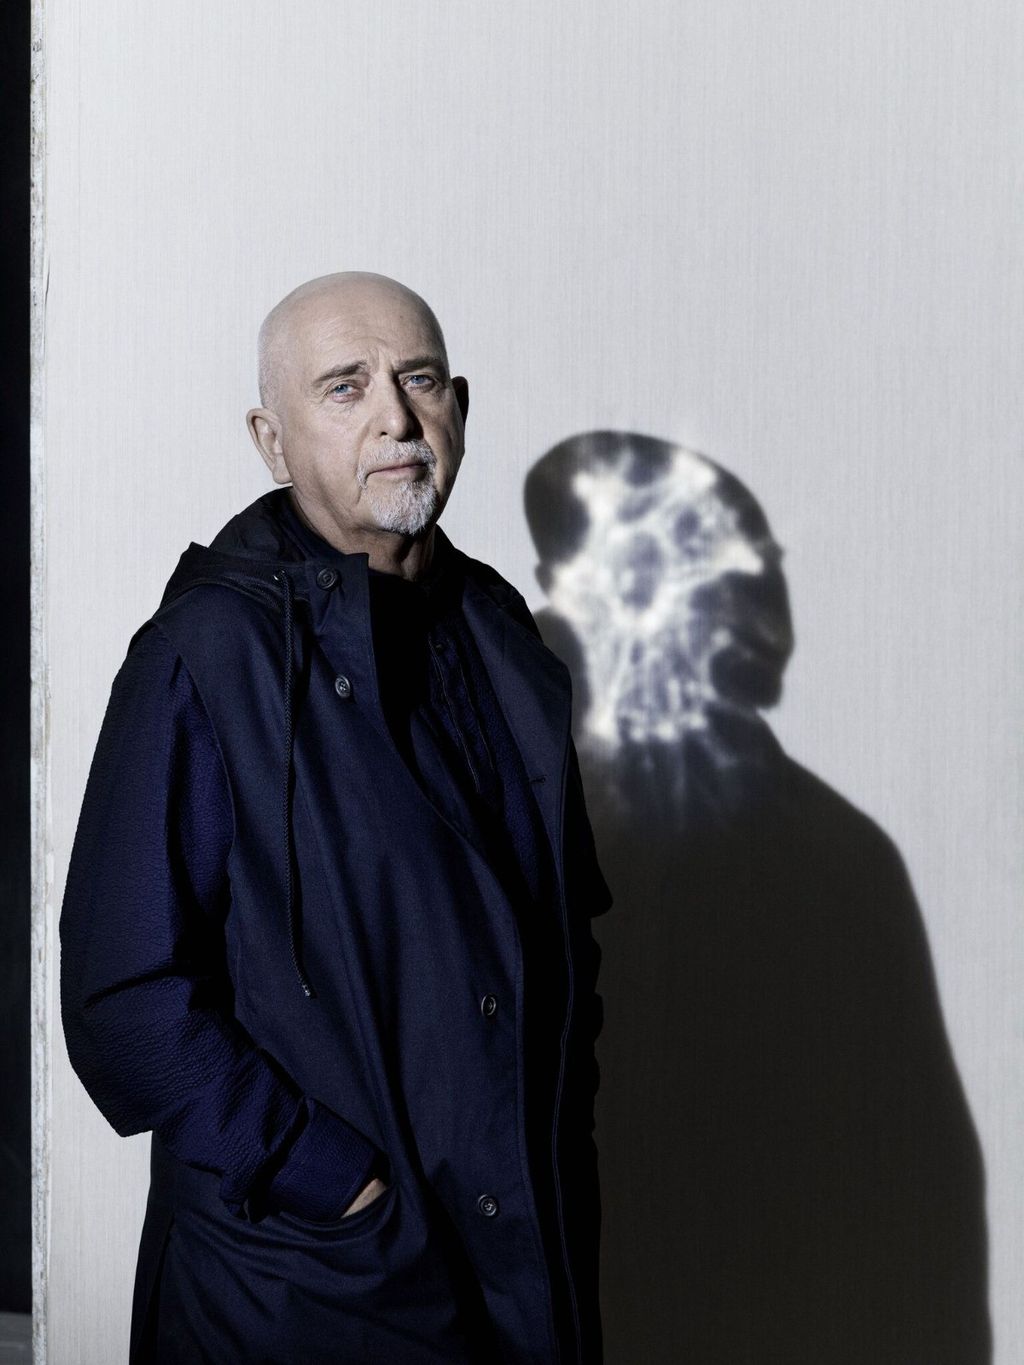 In arrivo “i/o” l’attesissimo nuovo album in studio di Peter Gabriel